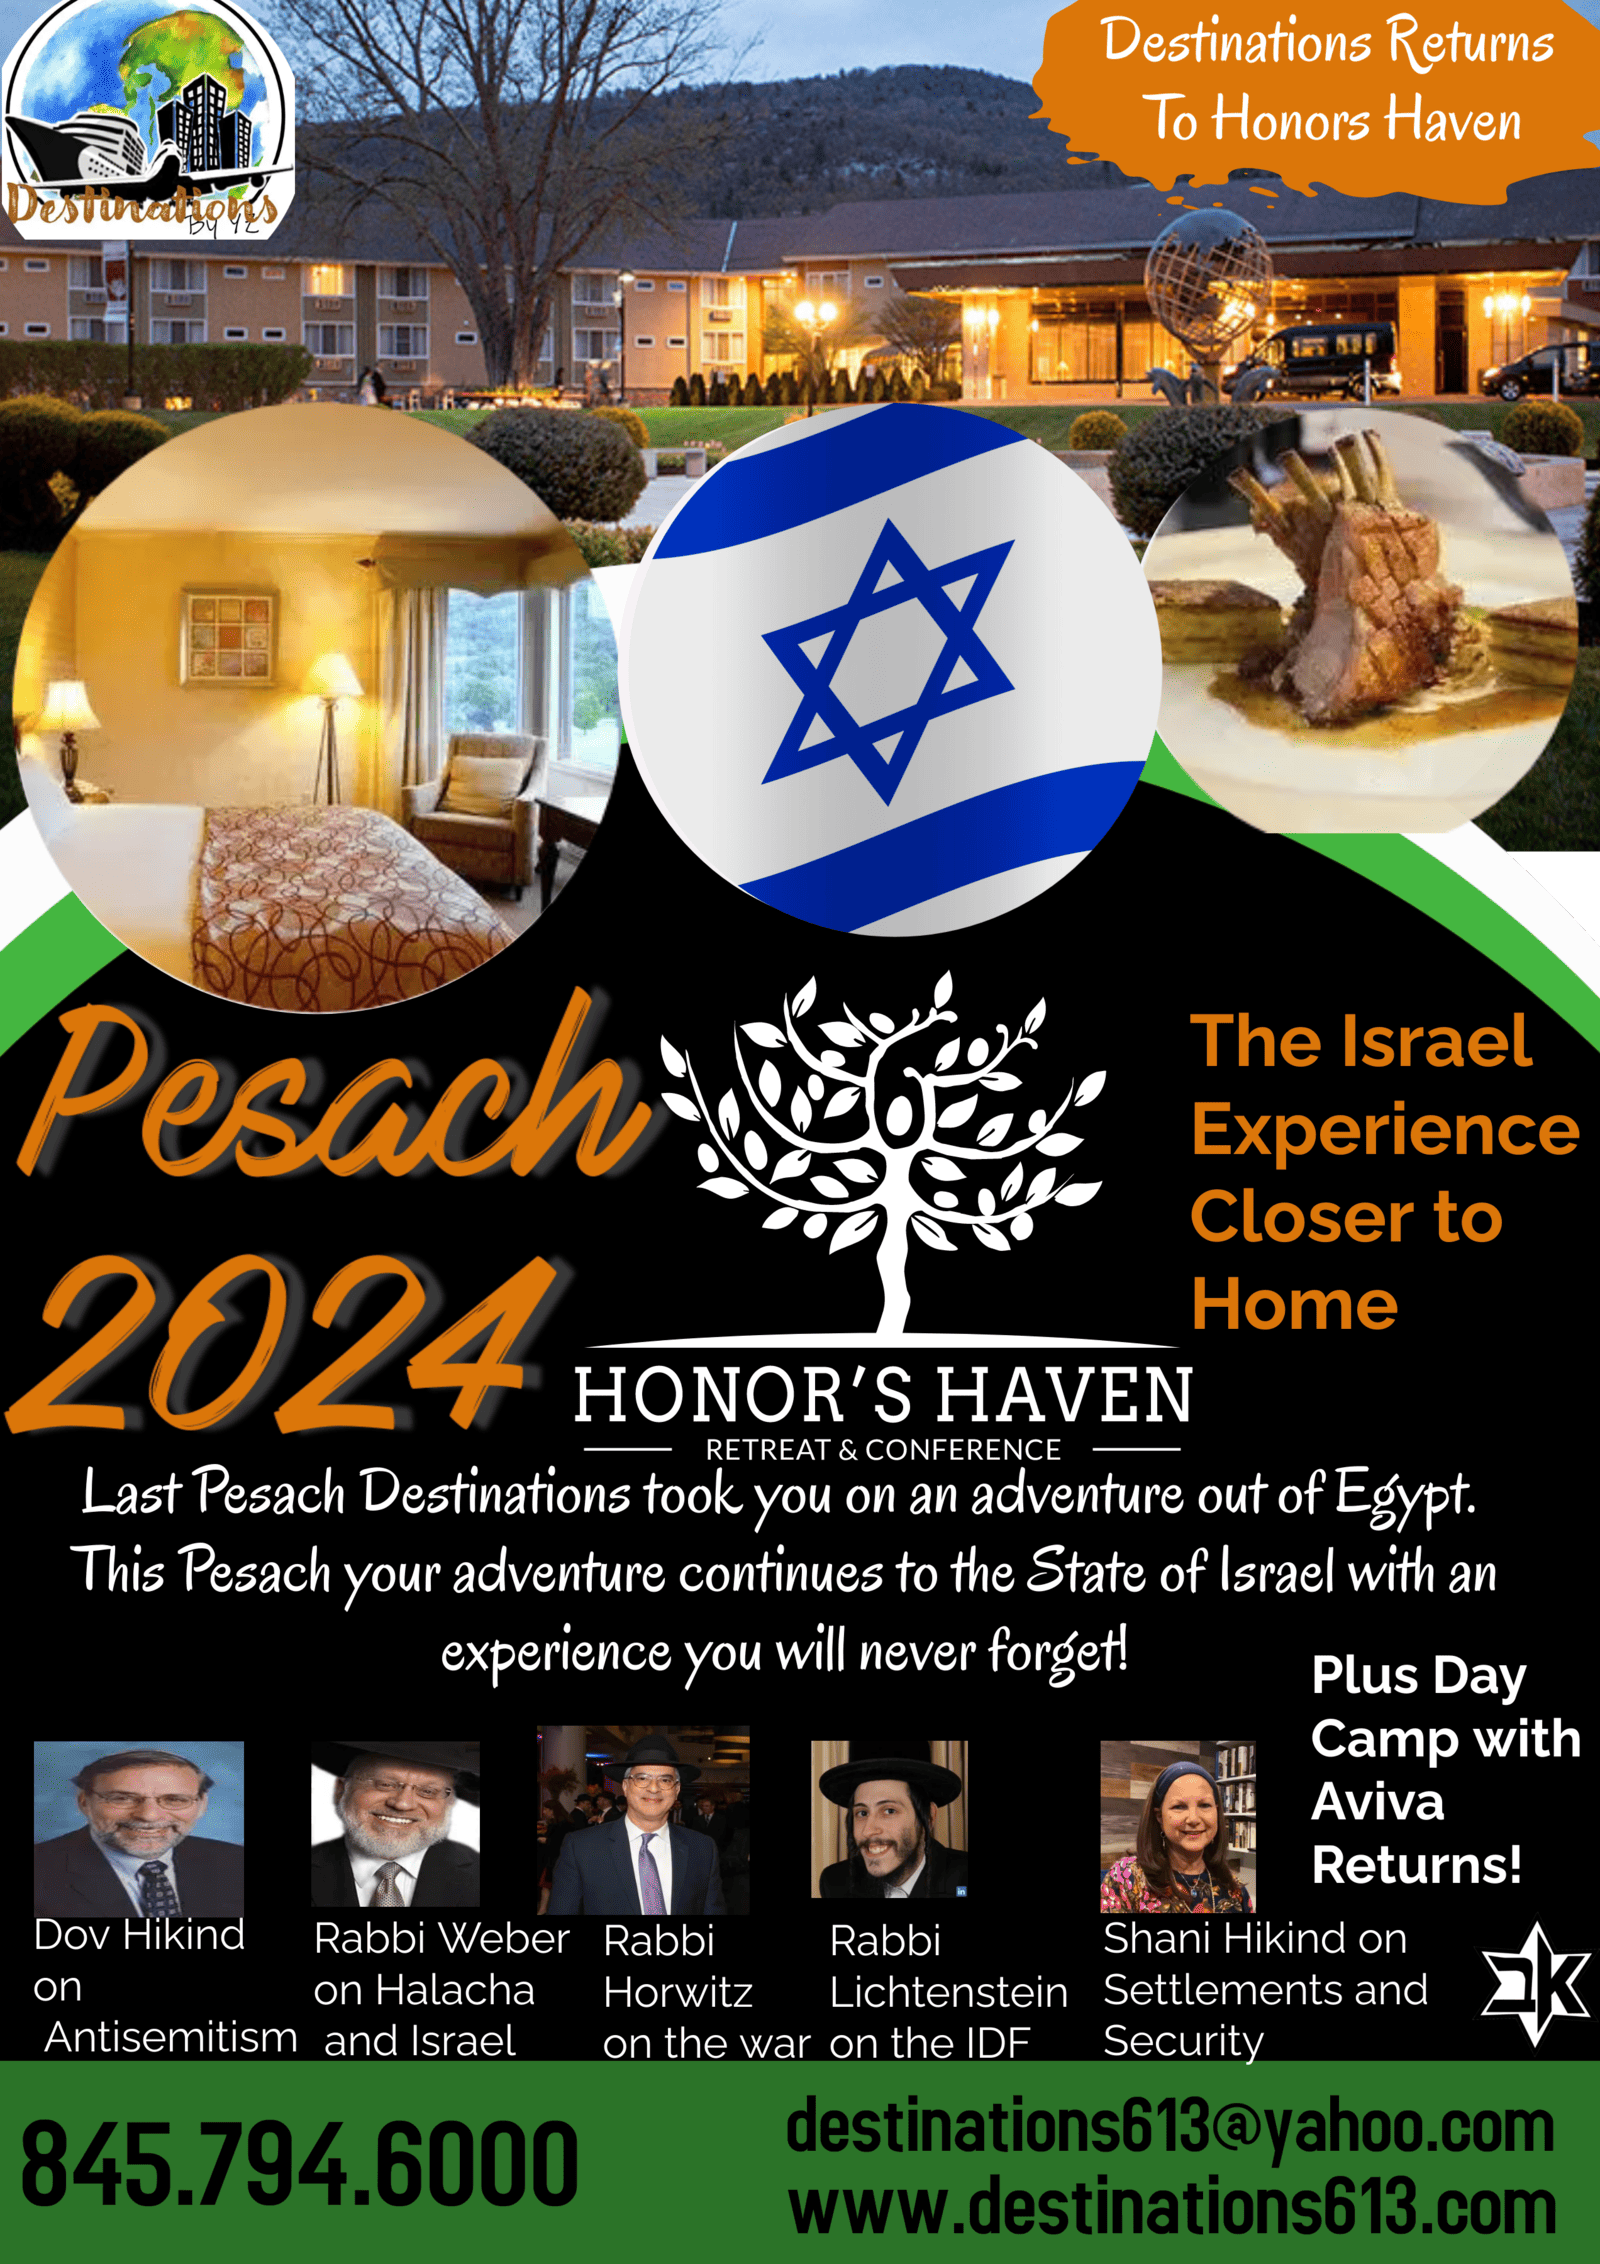 Destinations 613 Passover Program 2024 in Ellenville, New York